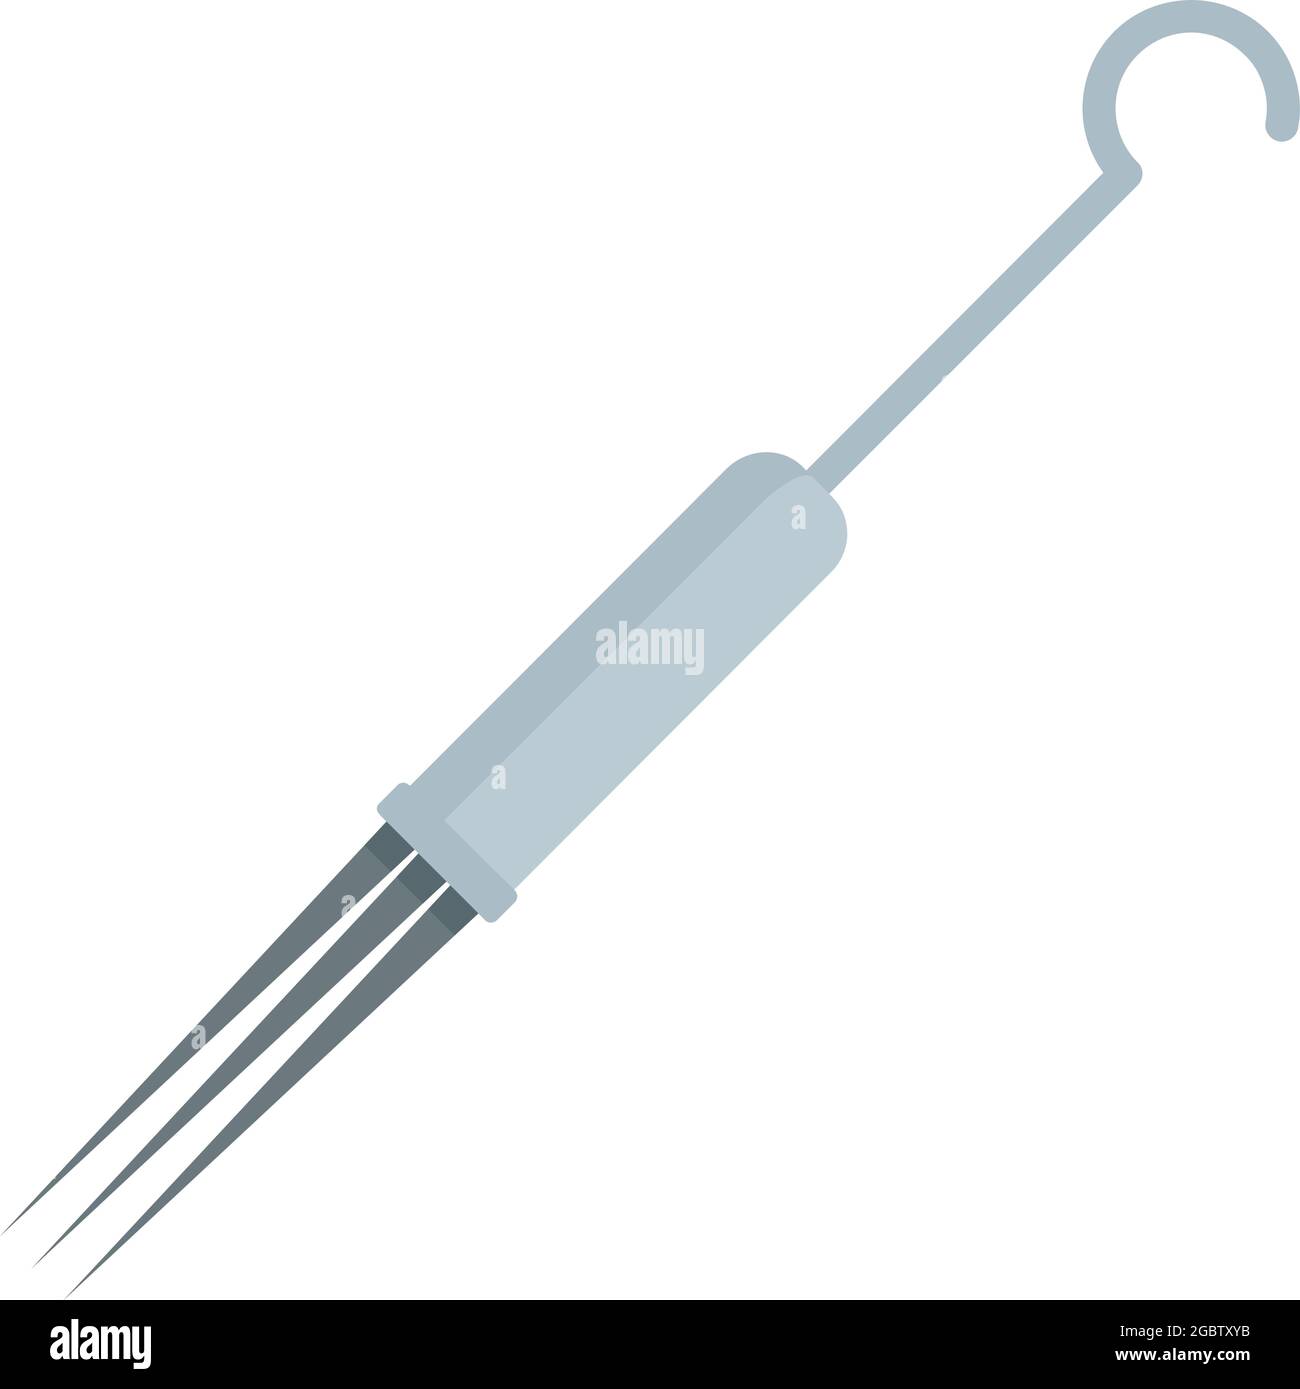 MTS Round Shader - Needle Cartridge